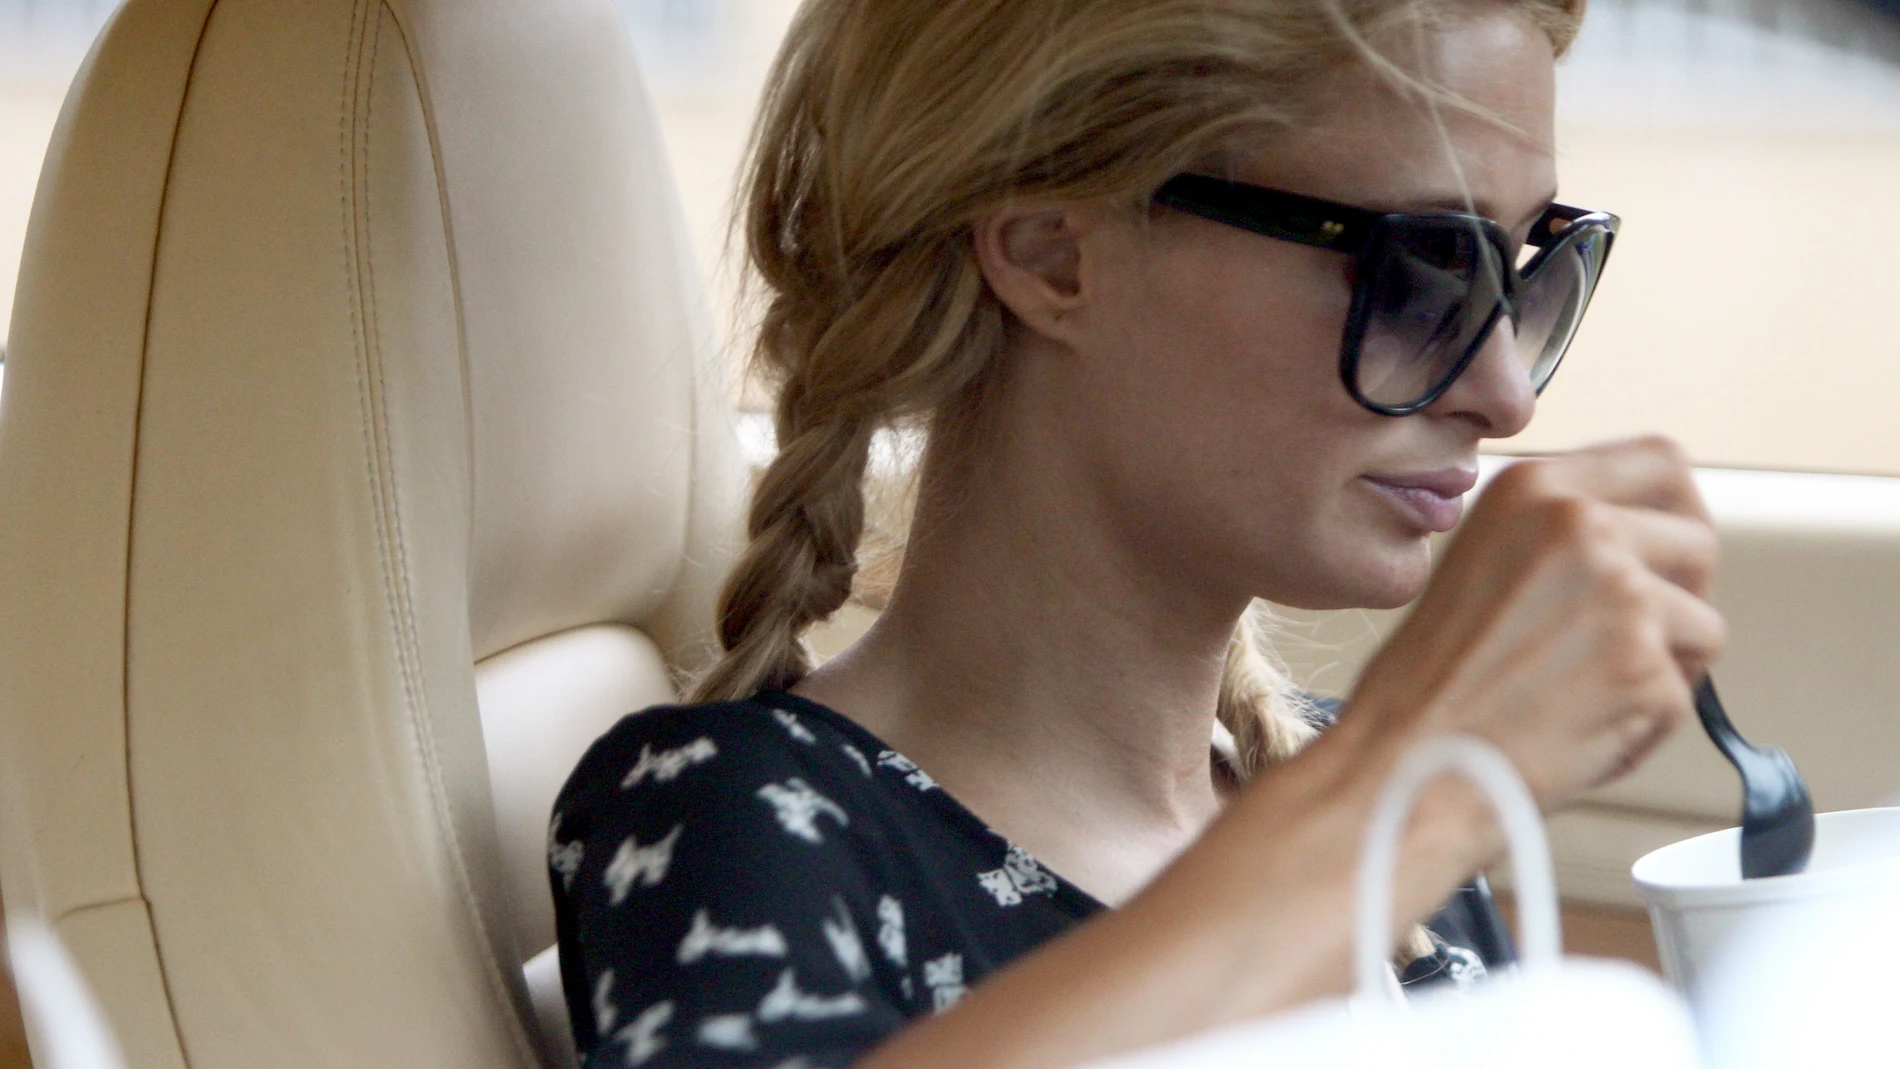 Paris Hilton disfrutando de un snack en el coche en Malibu.